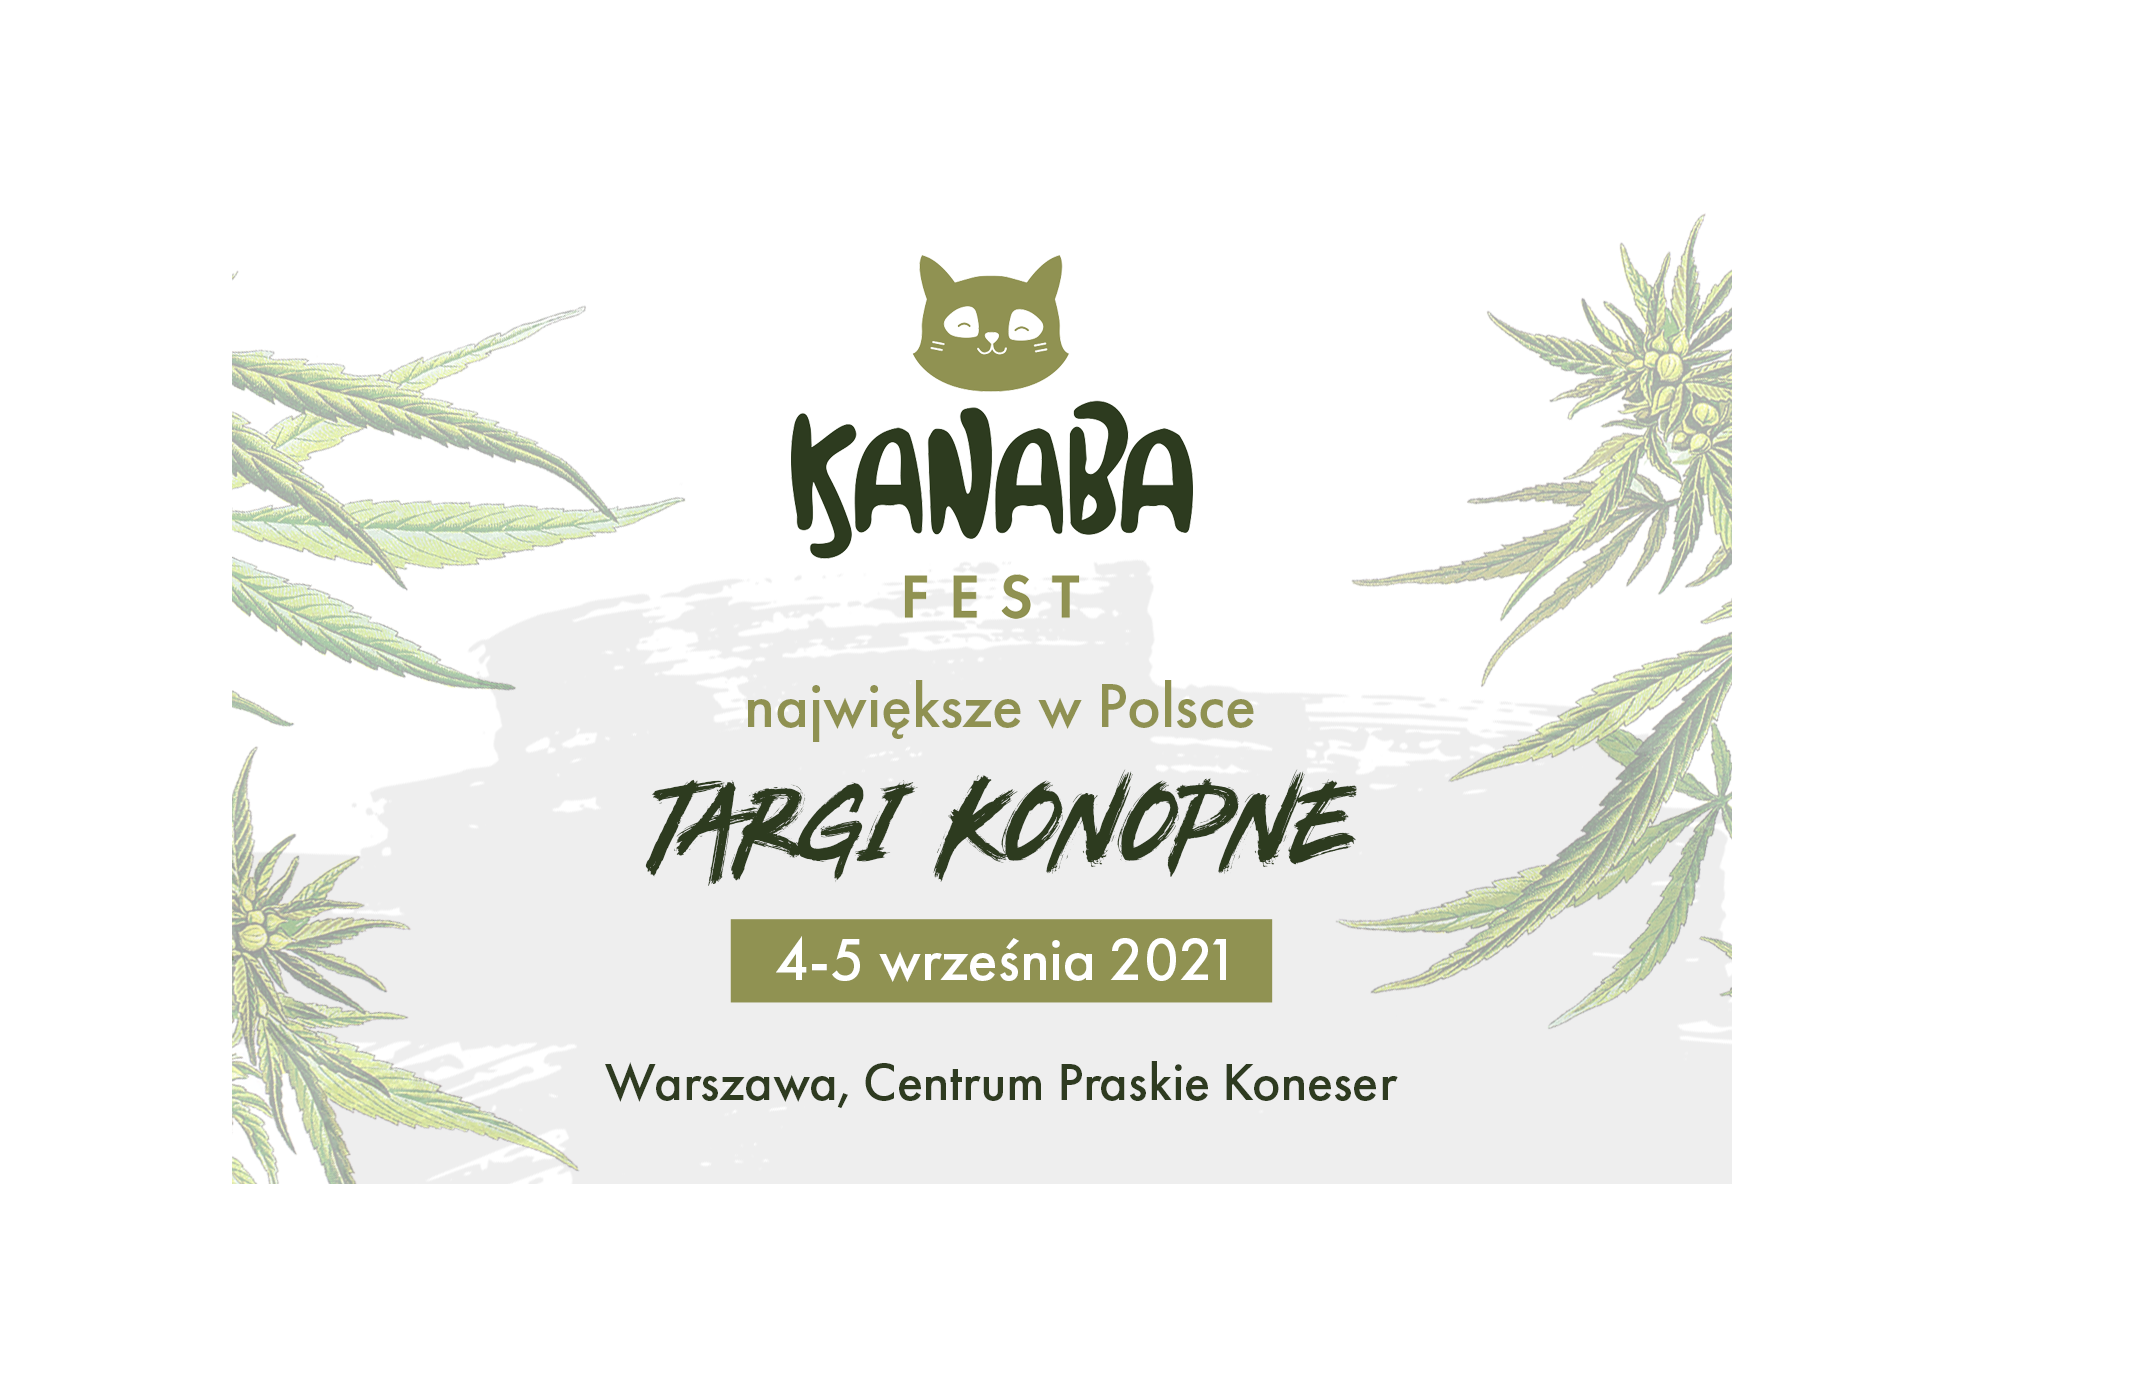 Wydarzenie poświęcone konopiom w Polsce? Tak, to możliwe - poznaj największe targi Kanaba Fest.